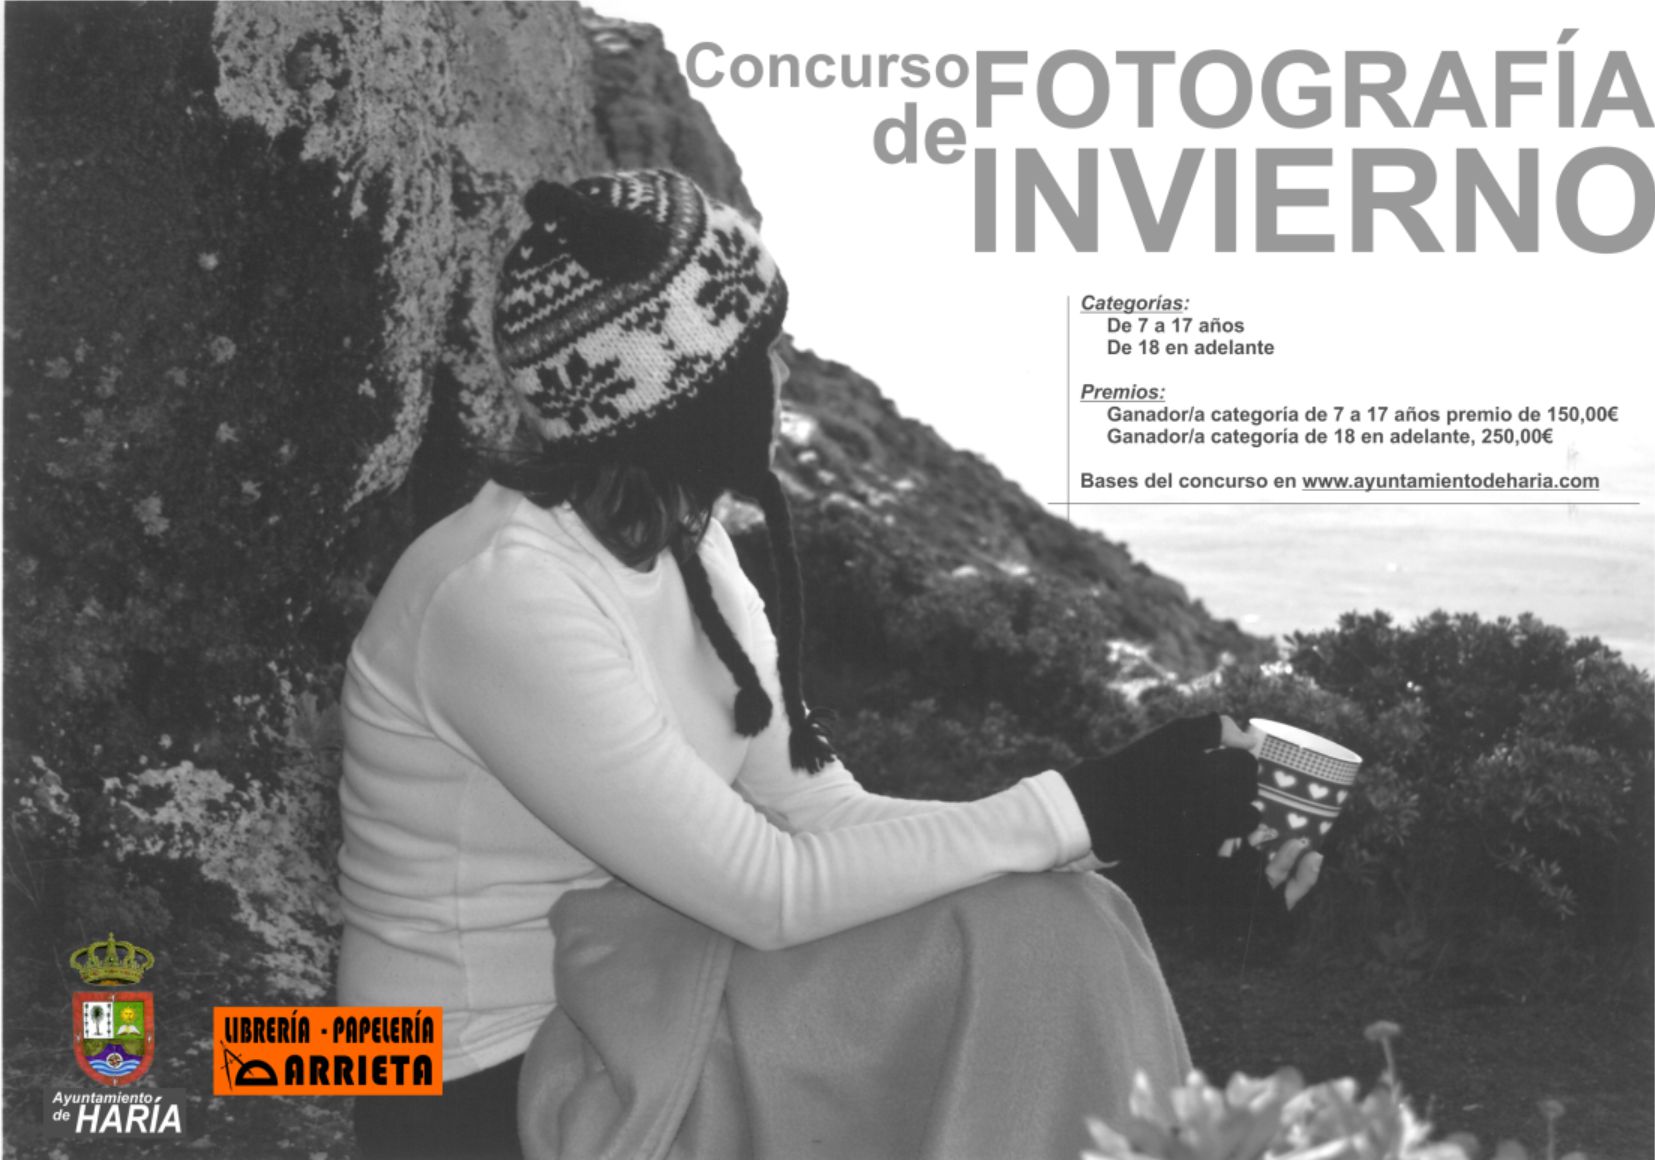 Cartel Concurso Fotografia Invierno 2017